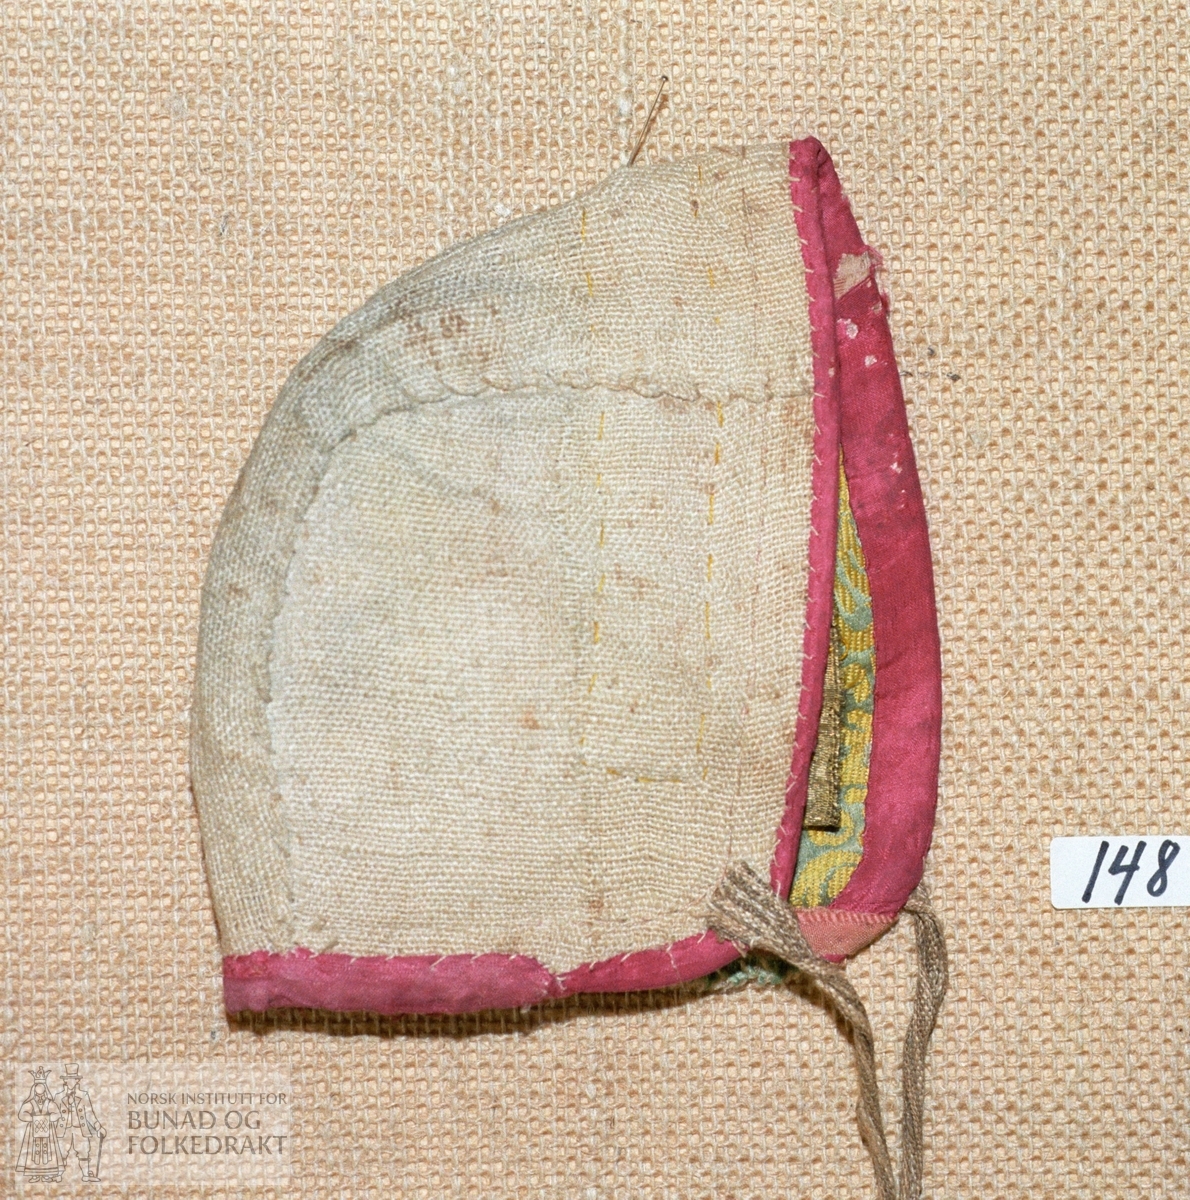 "Brukt i 1831".  Tobladslue laga av mønstra silkedamask fôra med linlerret. Kanta med blåraud silke. Prydd med gullband. Knyteband av stripa lin i ufarga og gulkvitt.